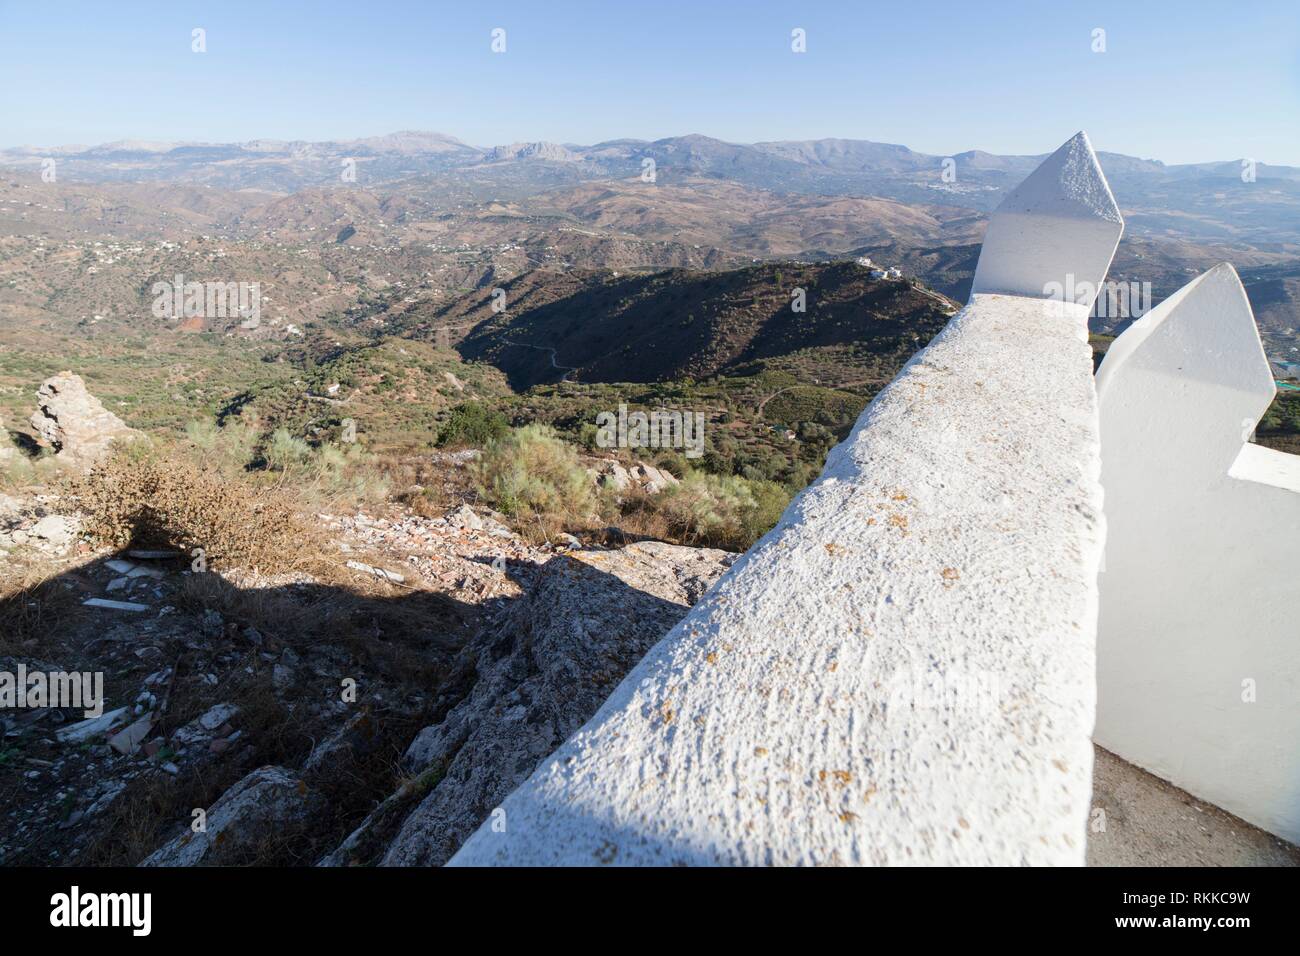 Comares paysage urbain. Village blanc sur la colline des montagnes de Malaga, Andalousie, espagne. Vue panoramique. Banque D'Images